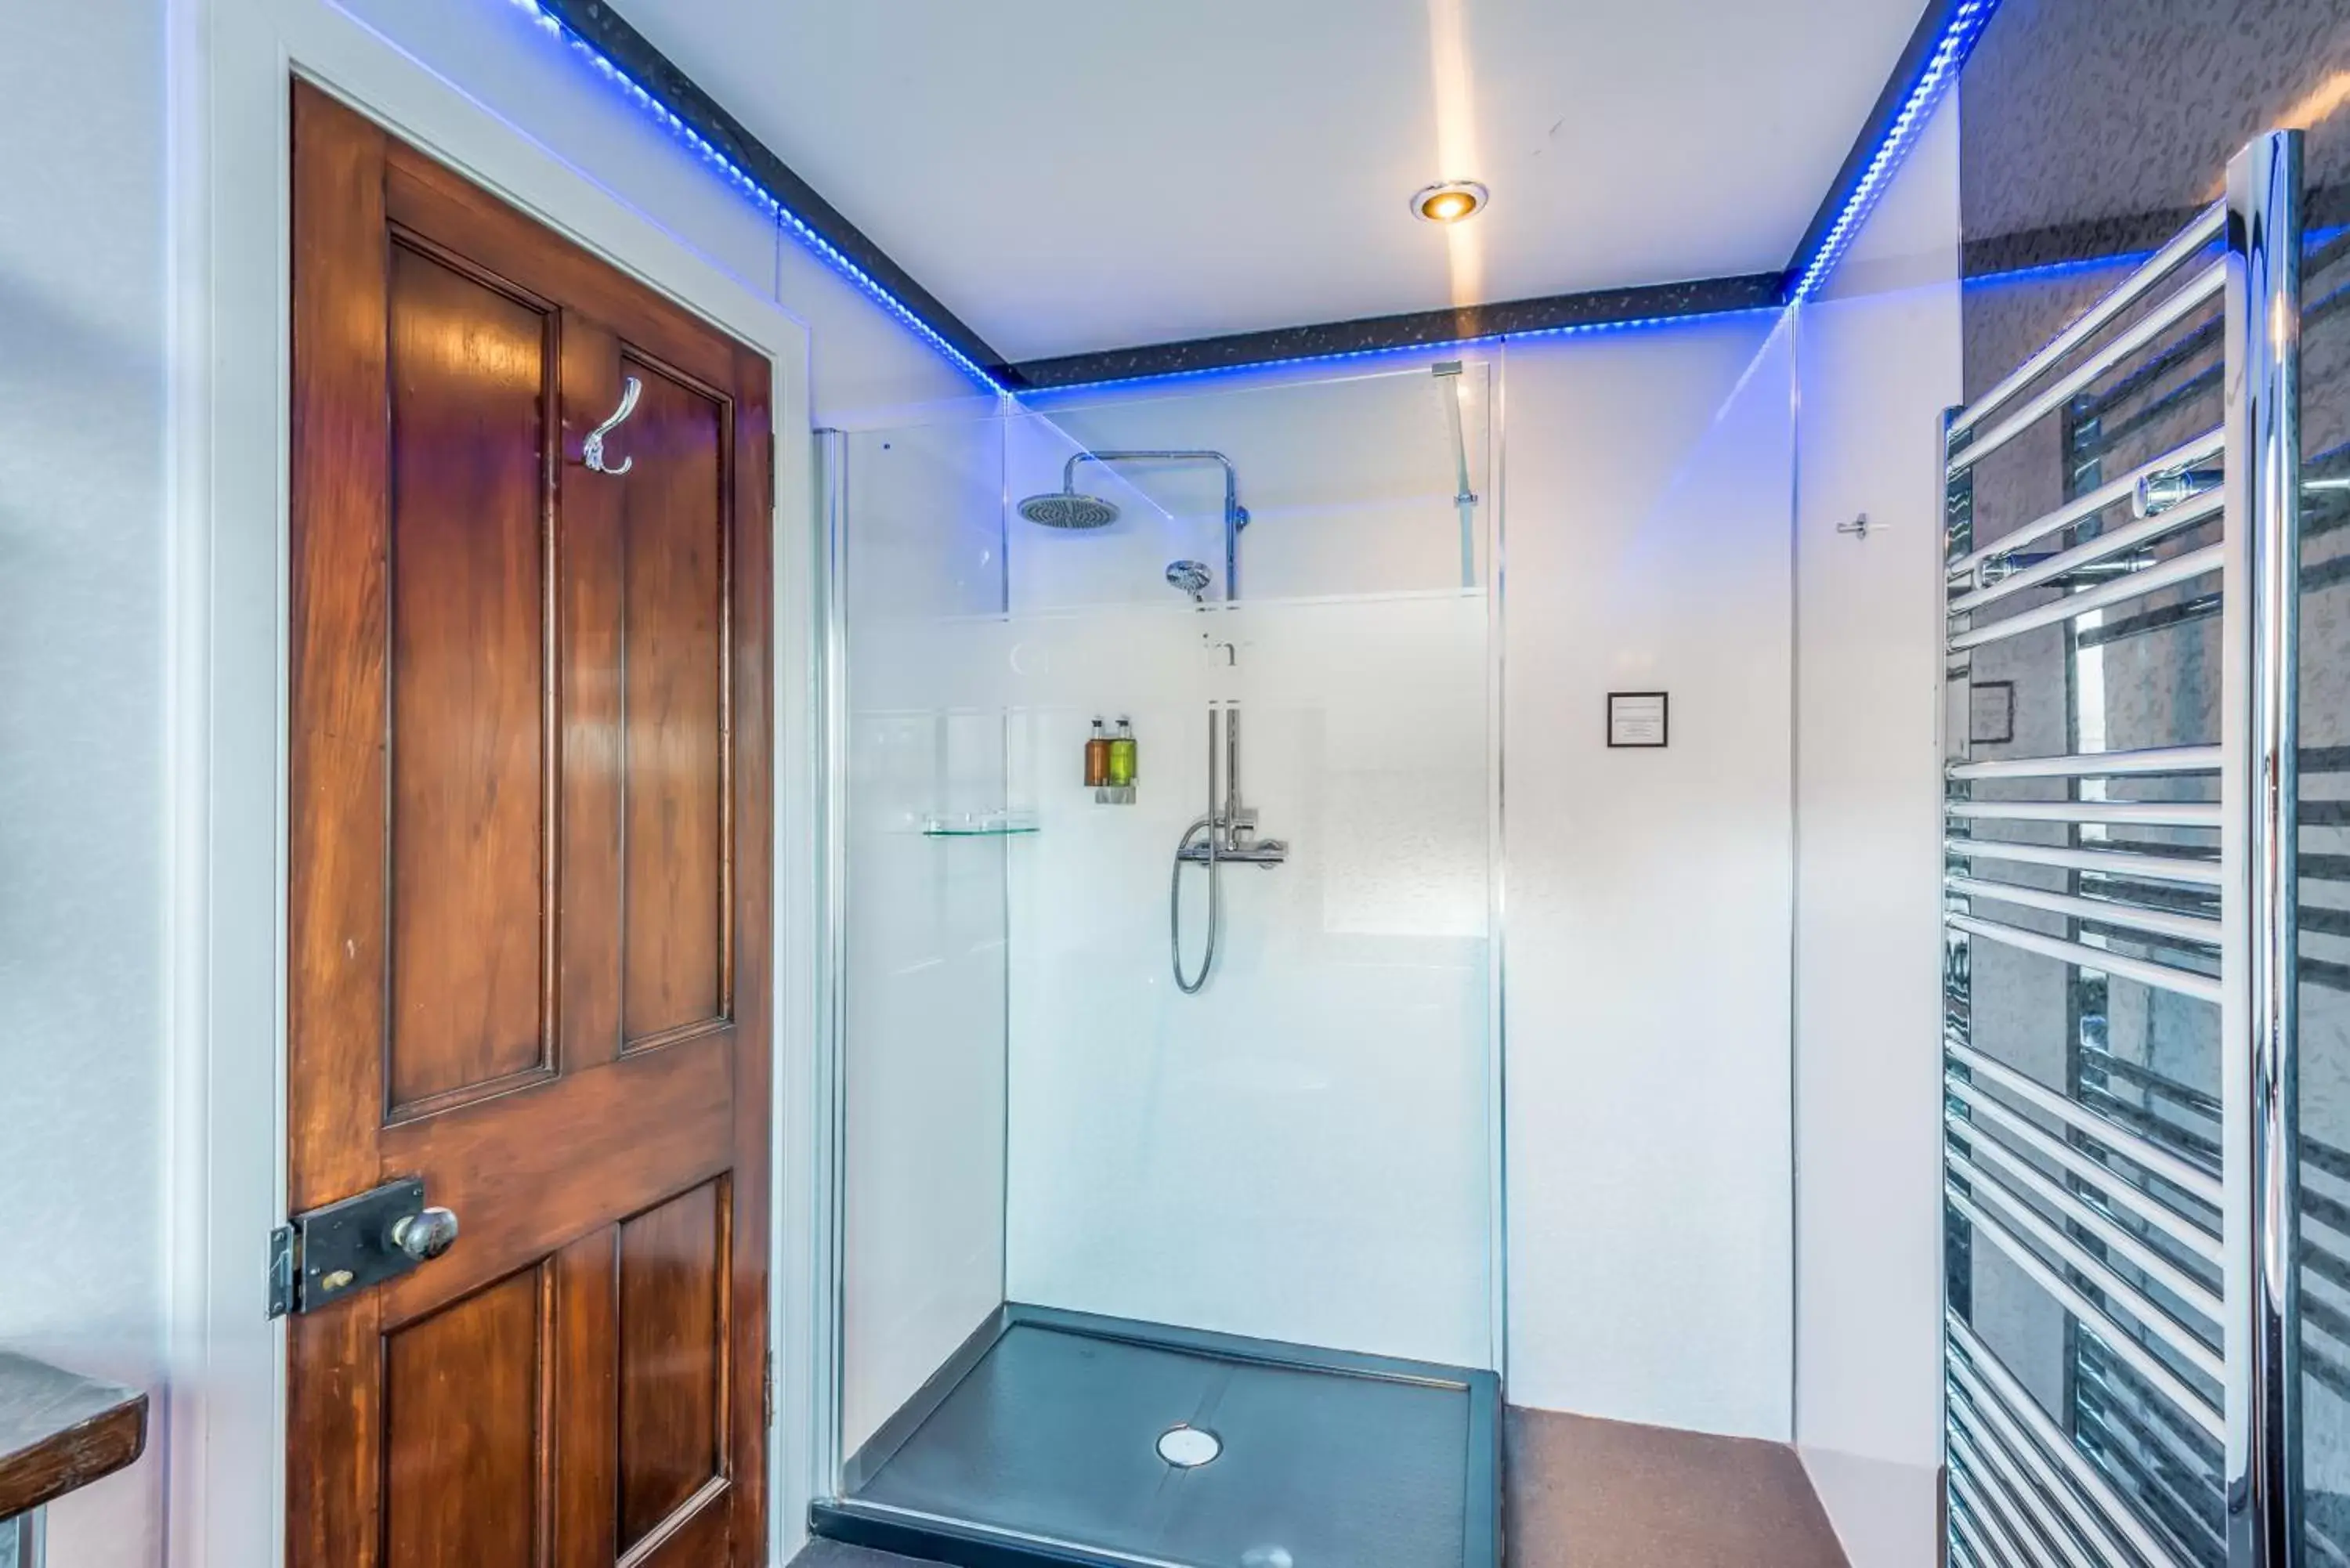 Bathroom in Grey Harlings Hotel